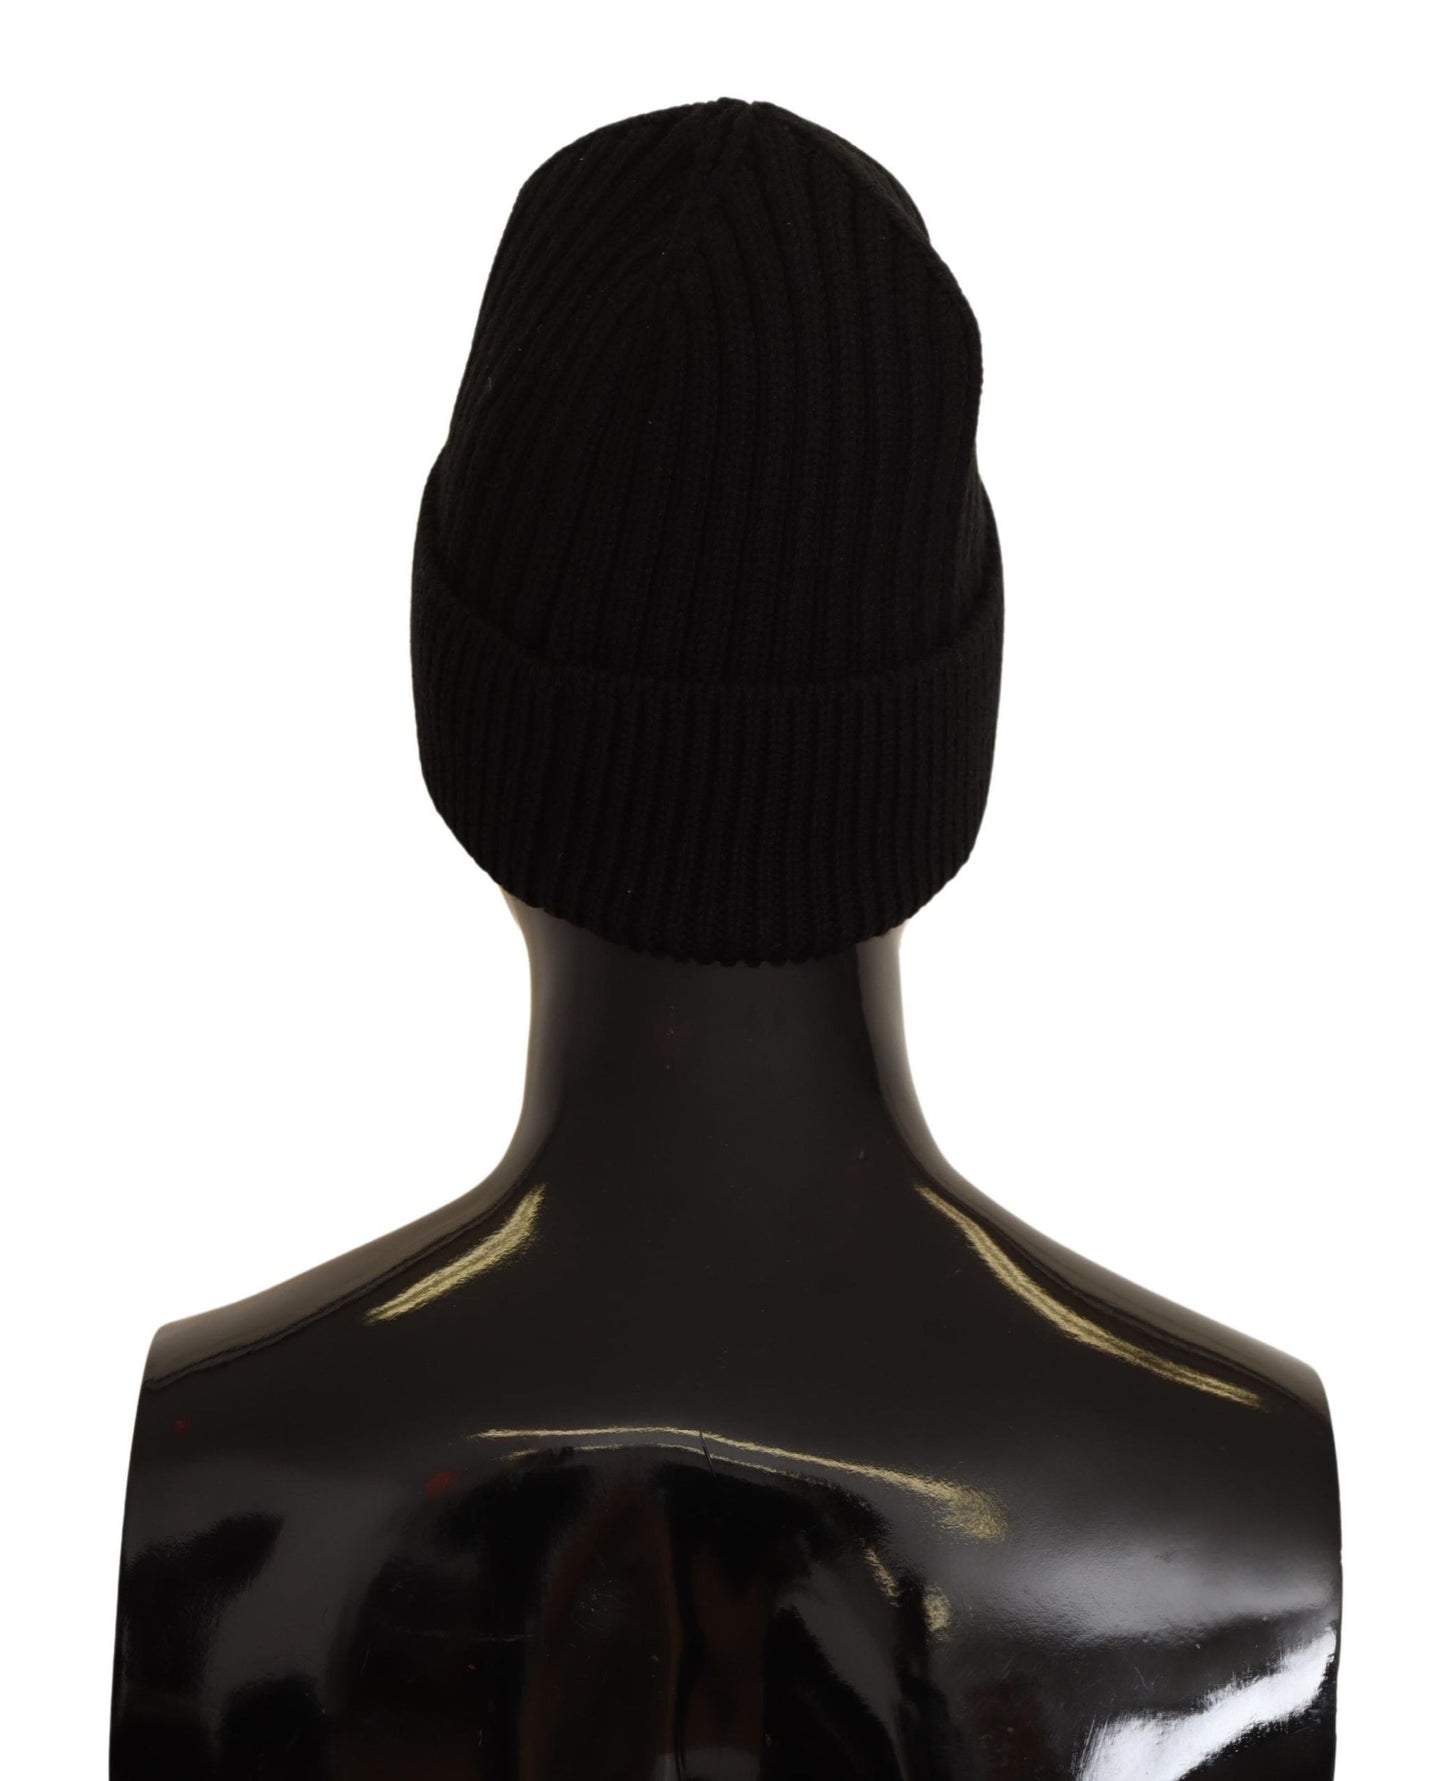 Dolce & Gabbana Black Wool Knit Women Winter Hat